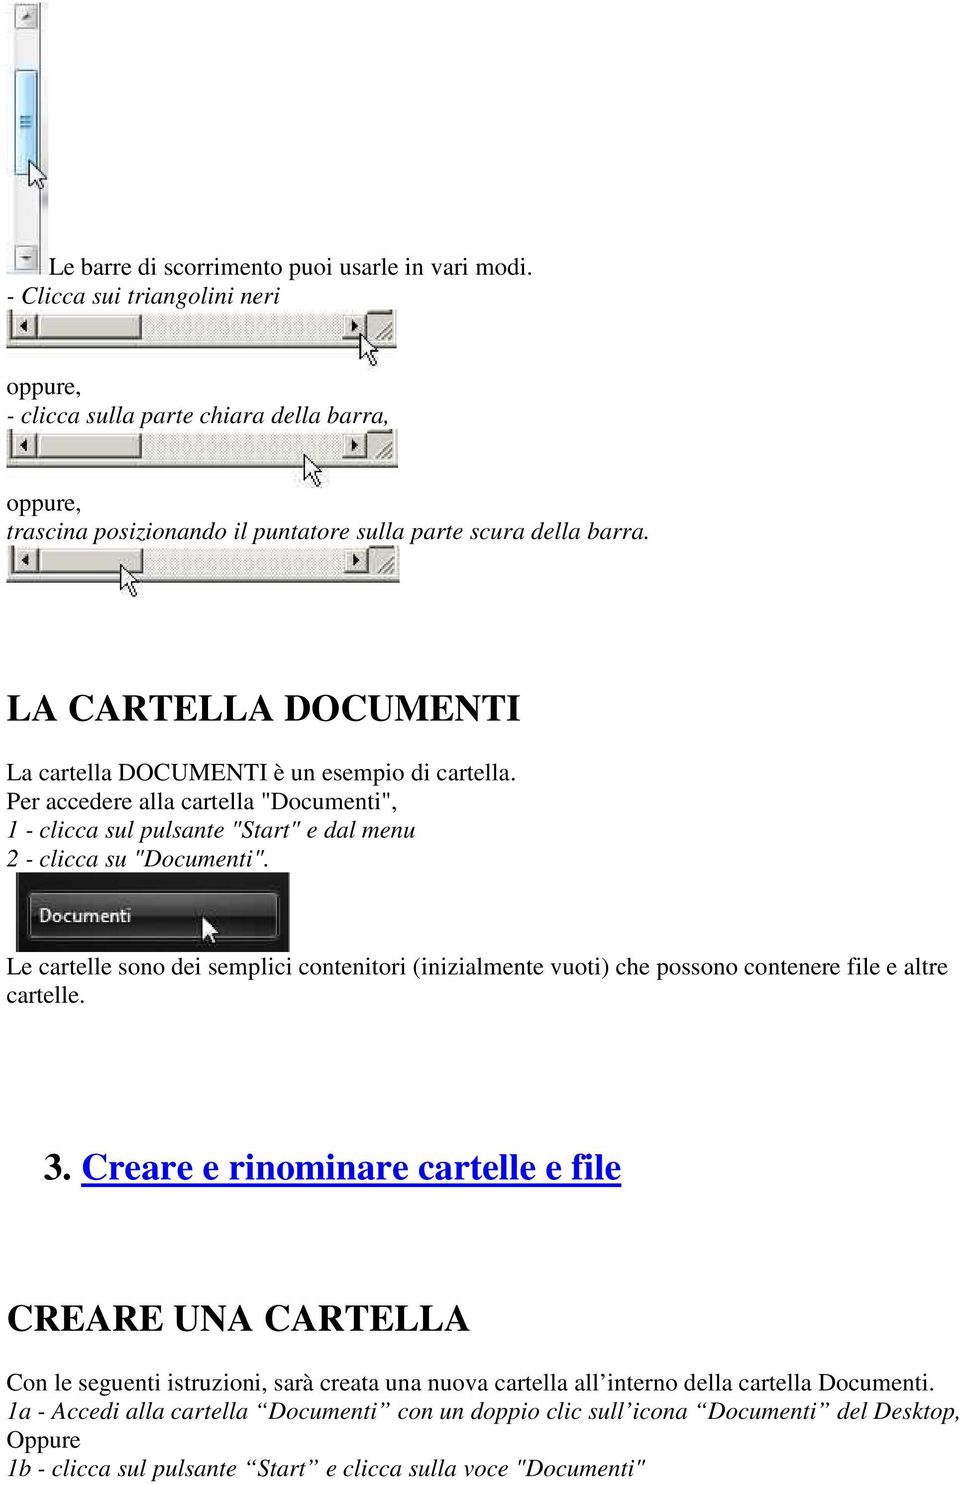 LA CARTELLA DOCUMENTI La cartella DOCUMENTI è un esempio di cartella. Per accedere alla cartella "Documenti", 1 - clicca sul pulsante "Start" e dal menu 2 - clicca su "Documenti".